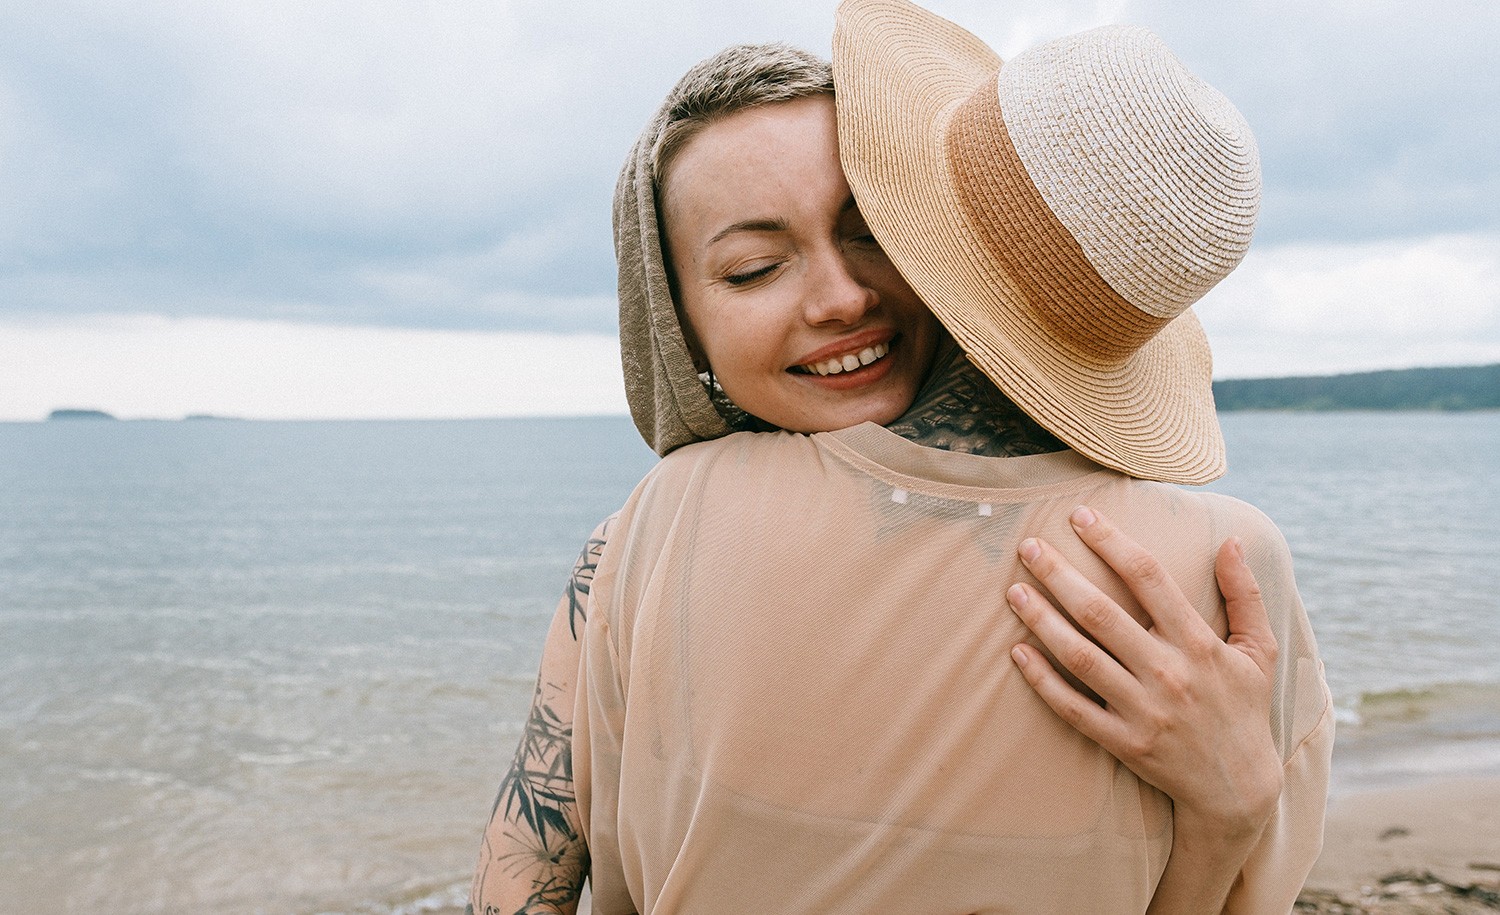 An introvert hugs her friend